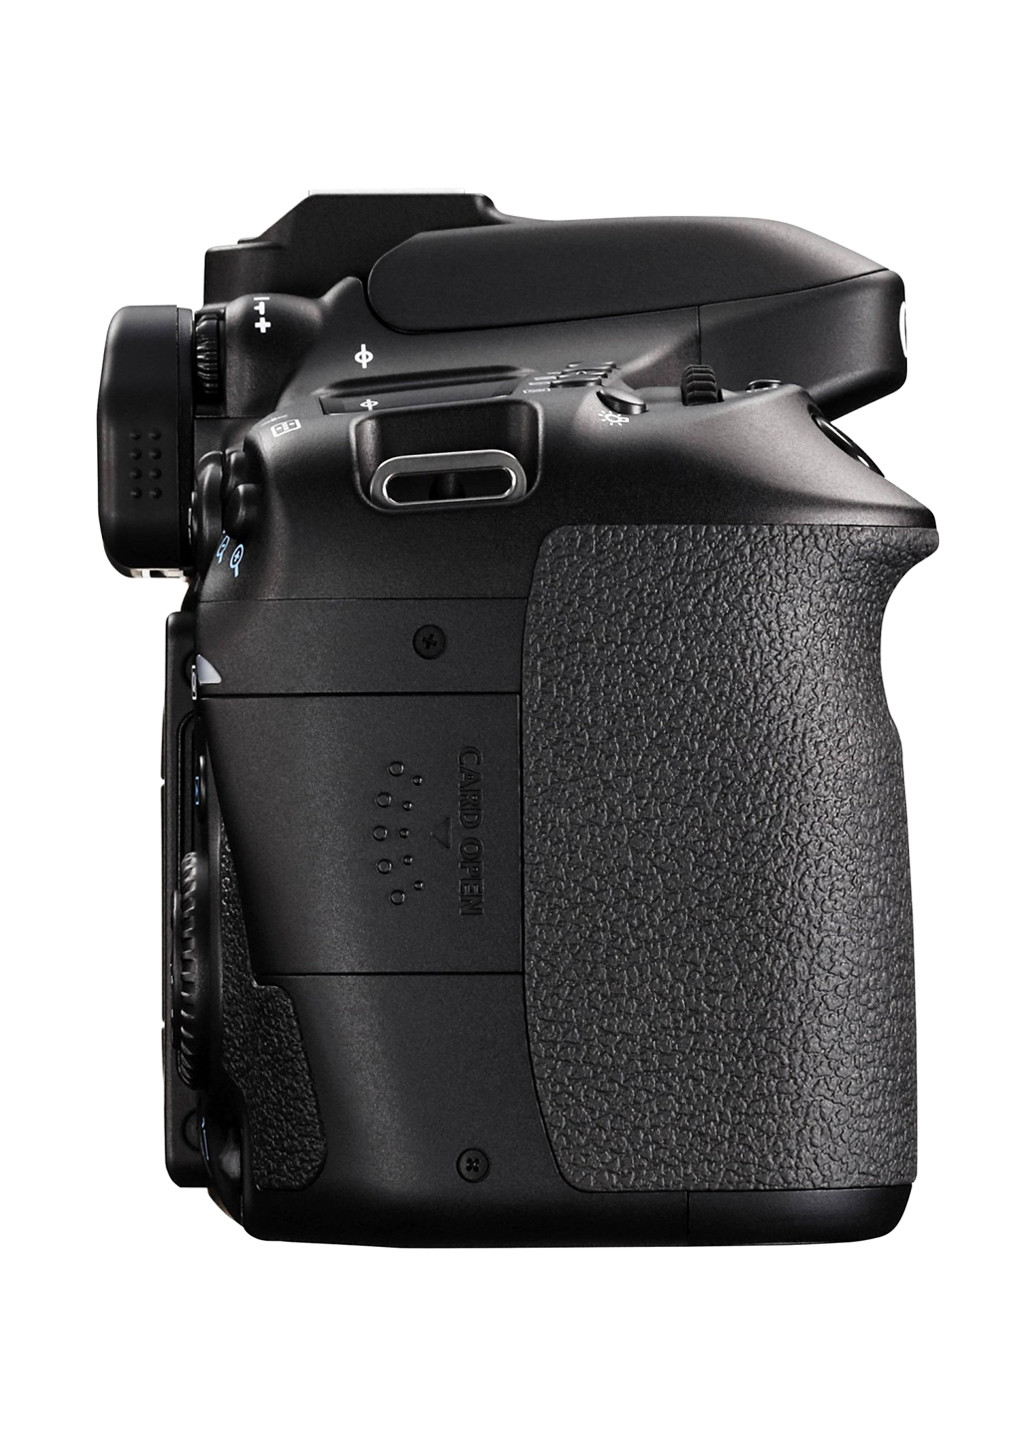 Зеркальная фотокамера Canon EOS 80D Body чёрная